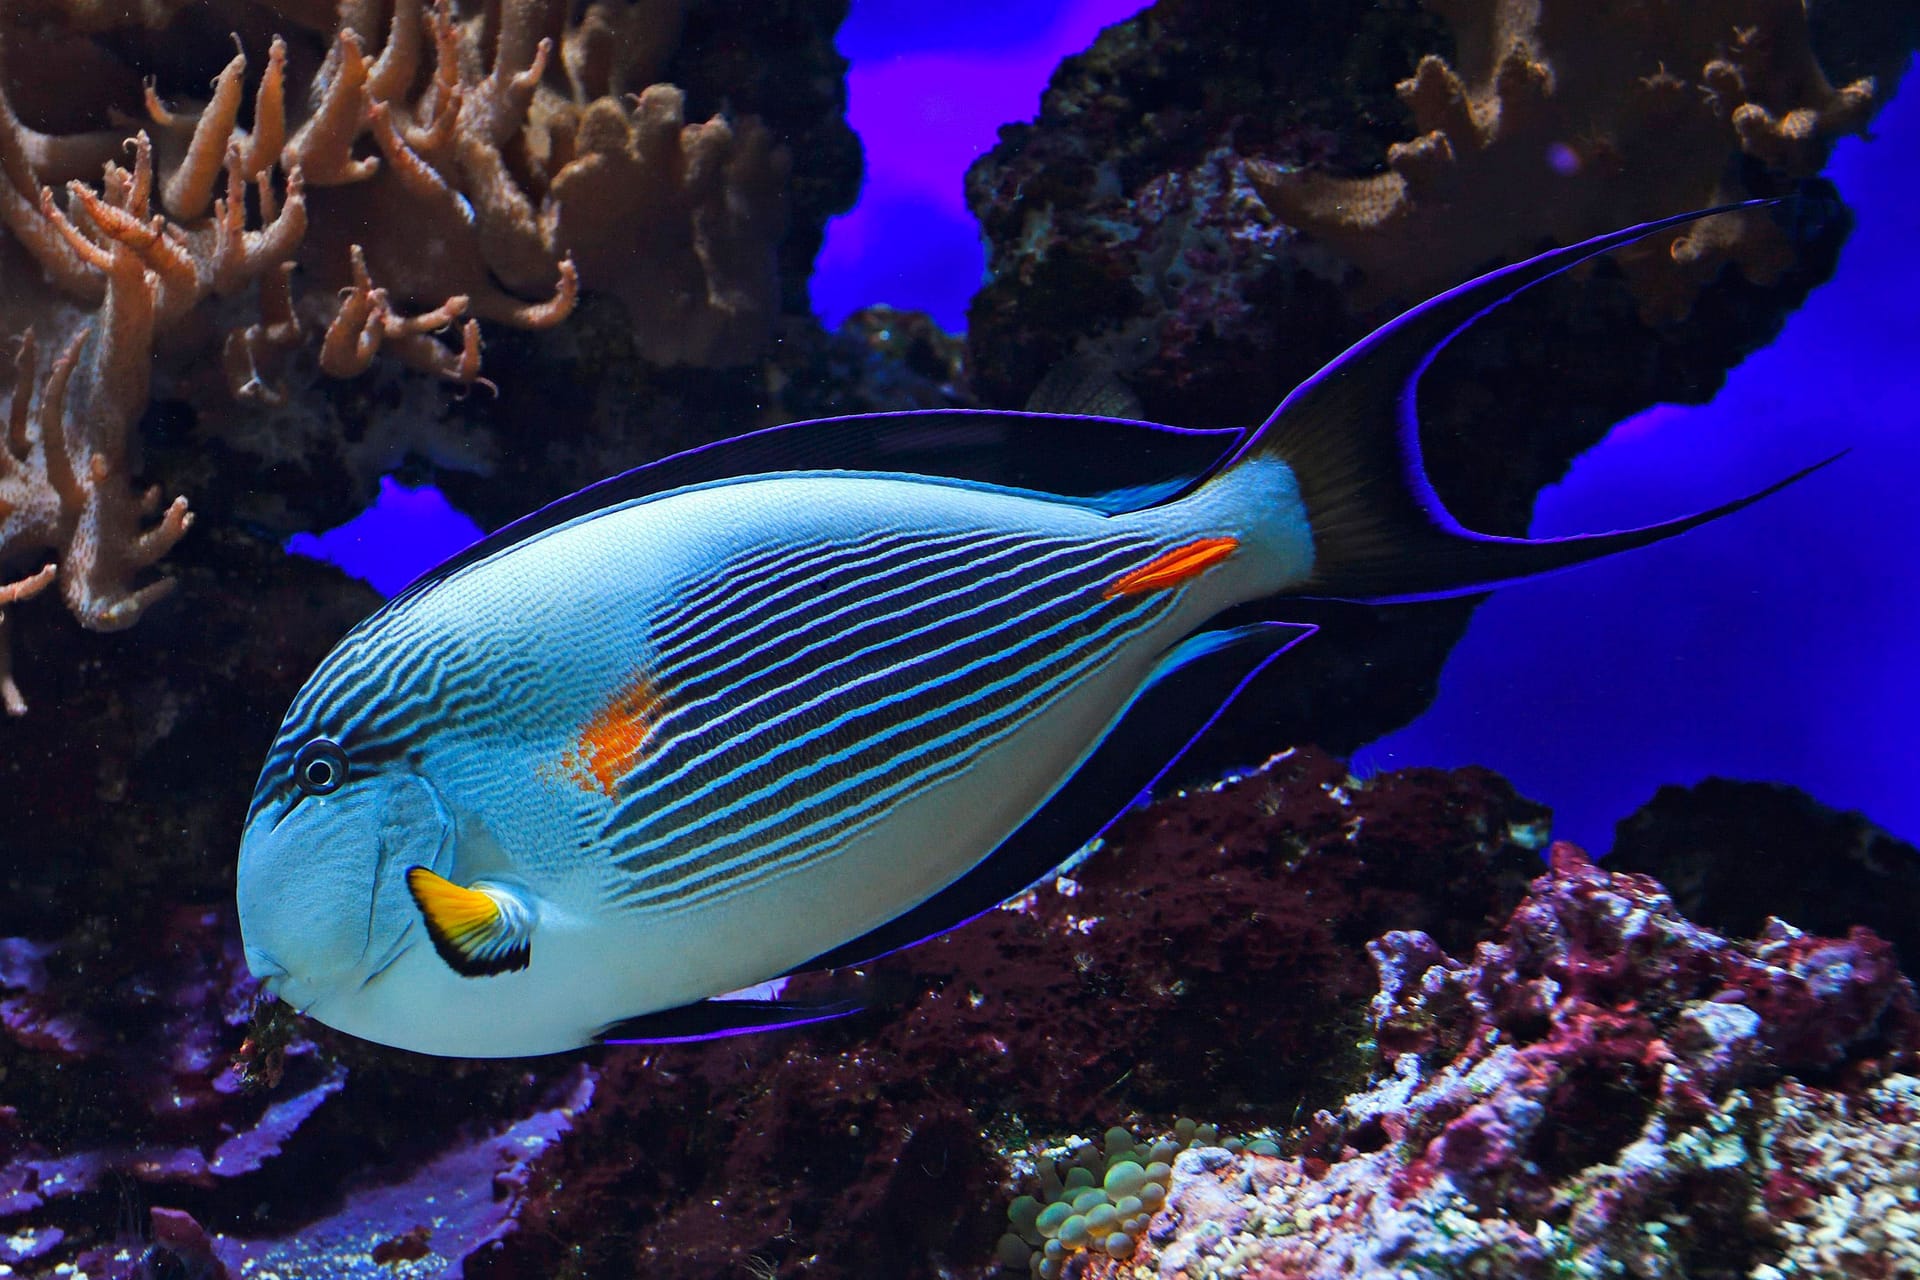 Doktorfische: Diese Tiere haben einen messerscharfen Knochen direkt hinter der Schwanzwurzel, der zur Verteidigung dienst. Dieser wird auch "Skalpell" genannt, daher der Name Doktorfische. Die leben in Korallenriffen und fressen Algen.